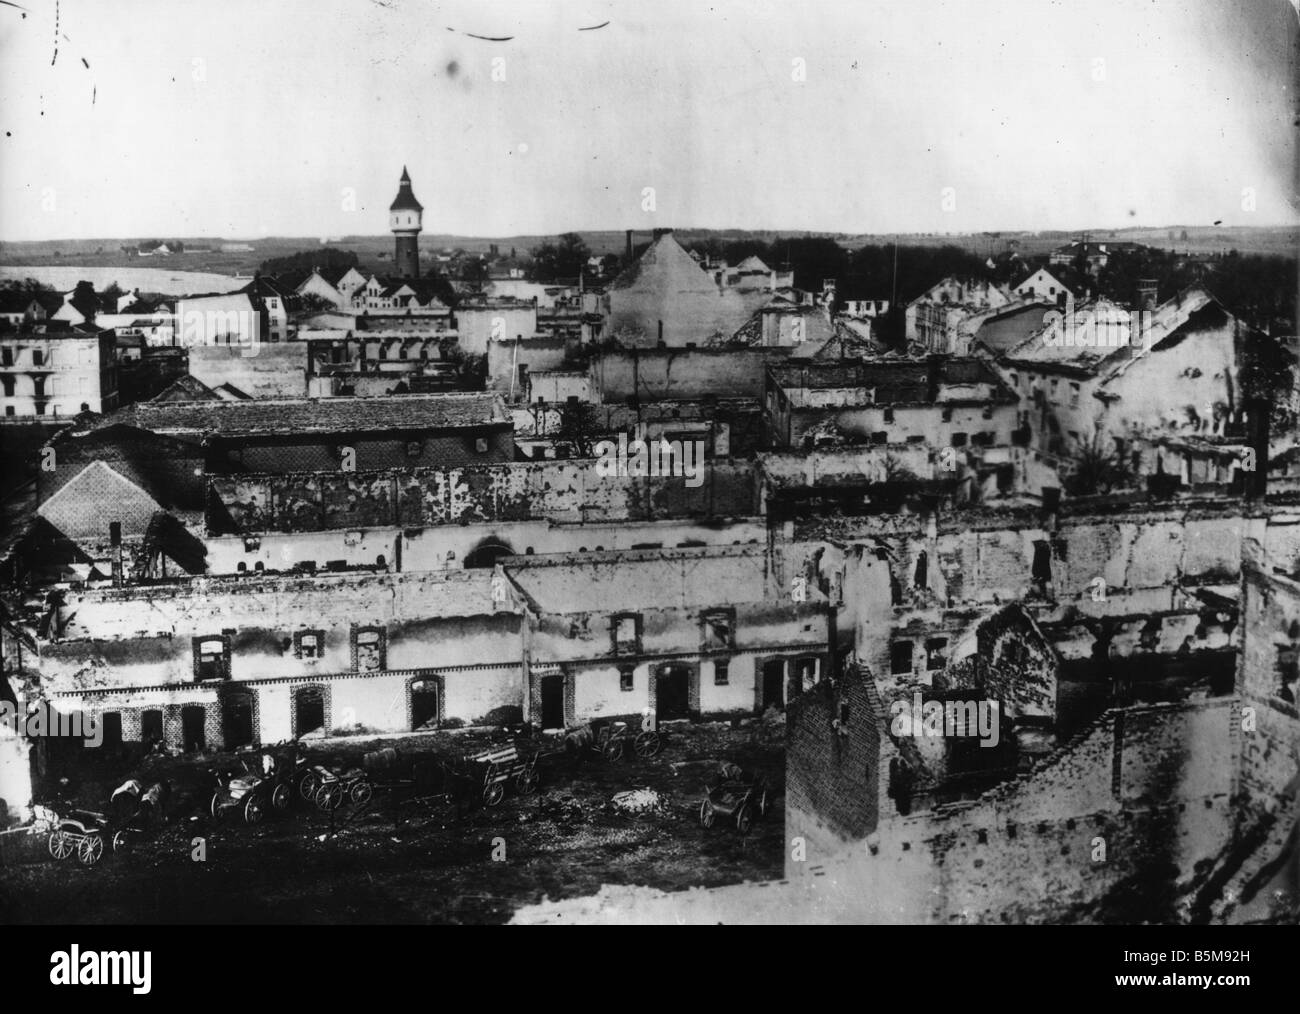 2 G55 O1 15 1914 LA PREMIÈRE GUERRE MONDIALE, la destruction à Ortelsburg Photo History WWI Front de l'est vue sur Ortelsburg est de la Prusse à la suite de son des Banque D'Images